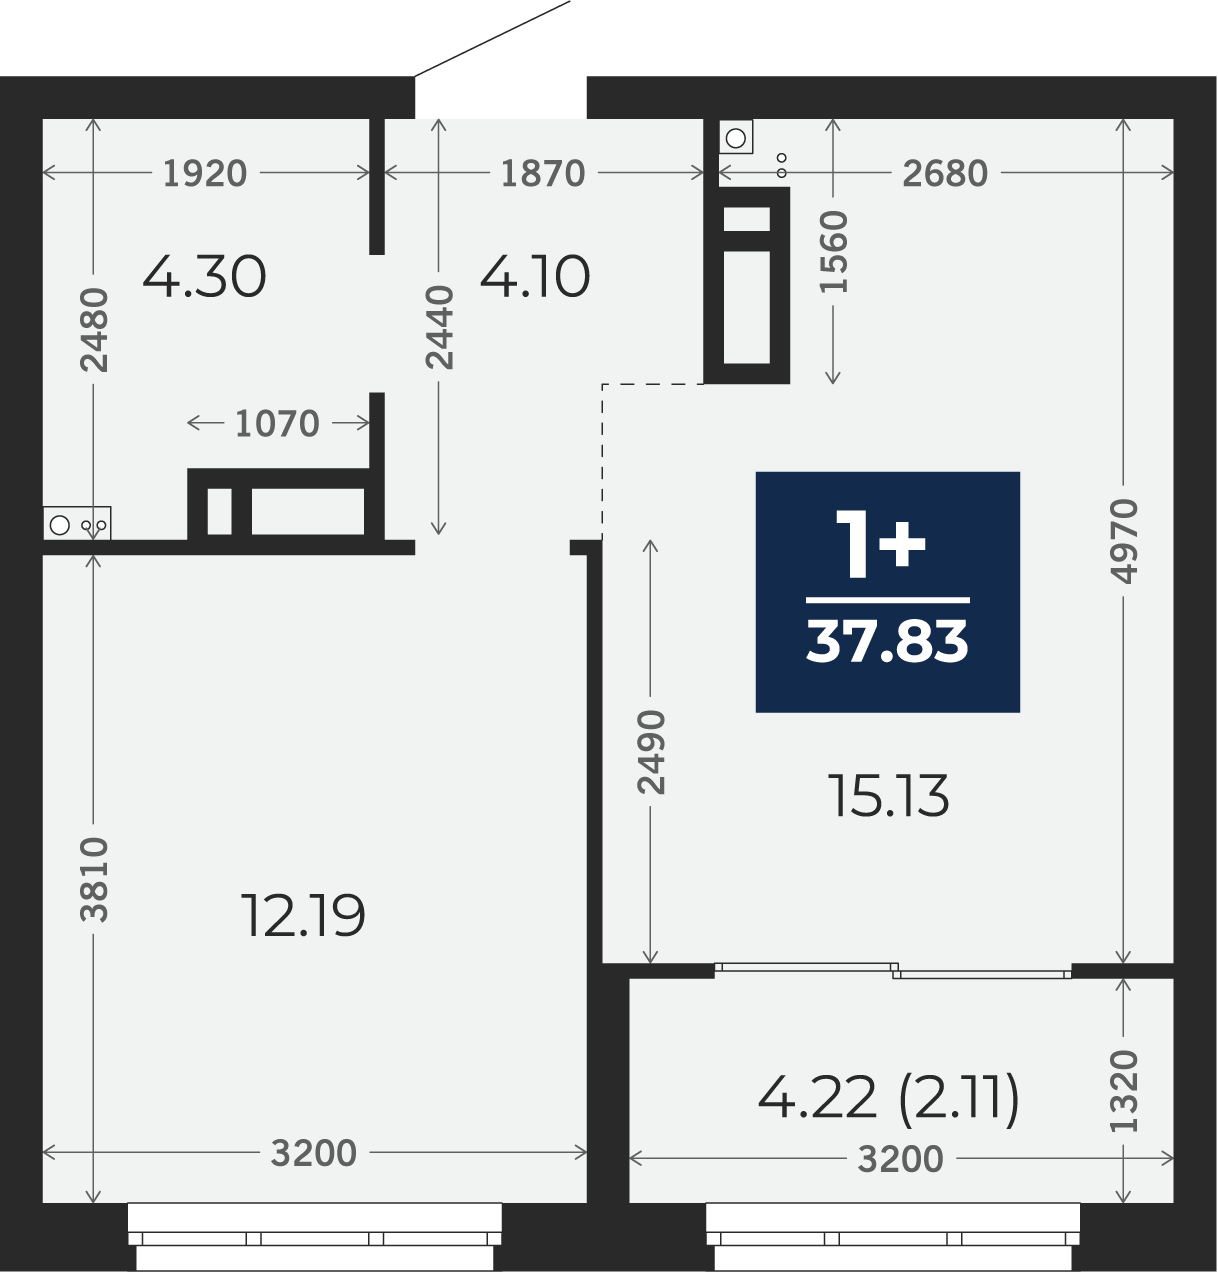 Квартира № 255, 1-комнатная, 37.83 кв. м, 8 этаж